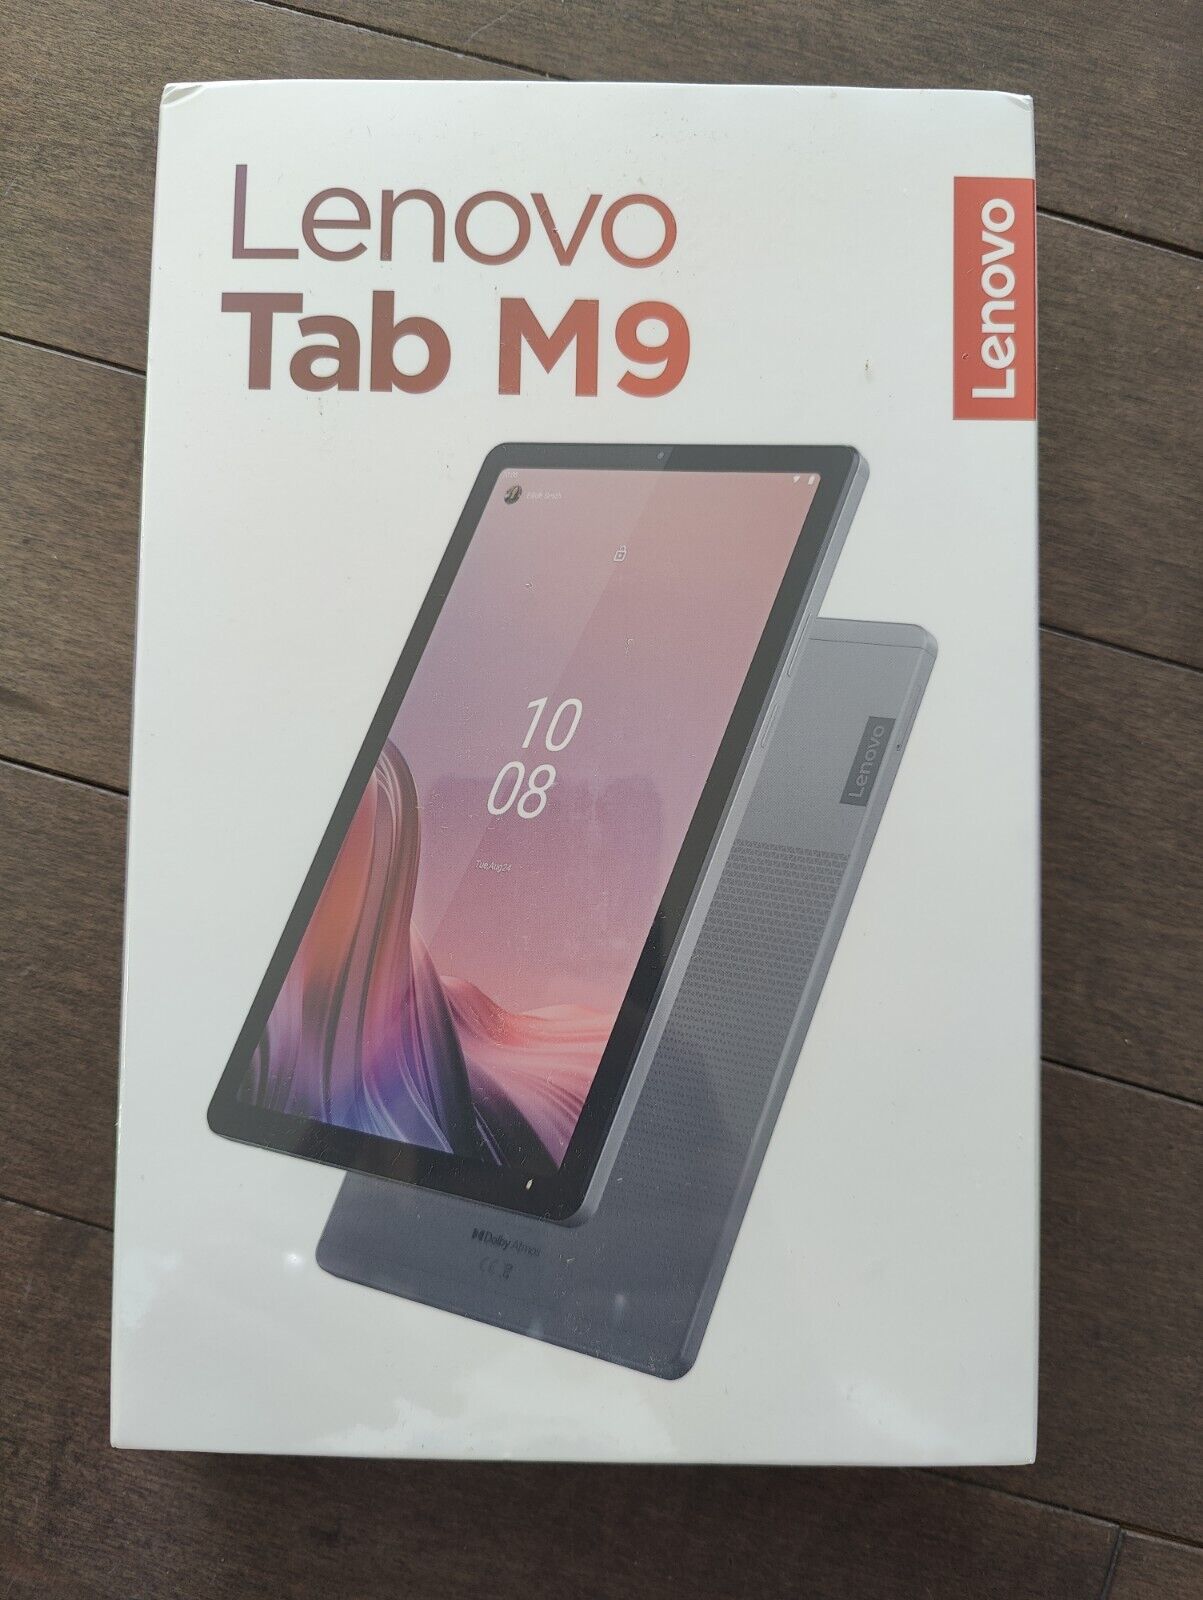 Lenovo Tab M9 4GB + 64GB 9'' Tablet - Artic Gray (ZAC30053US)